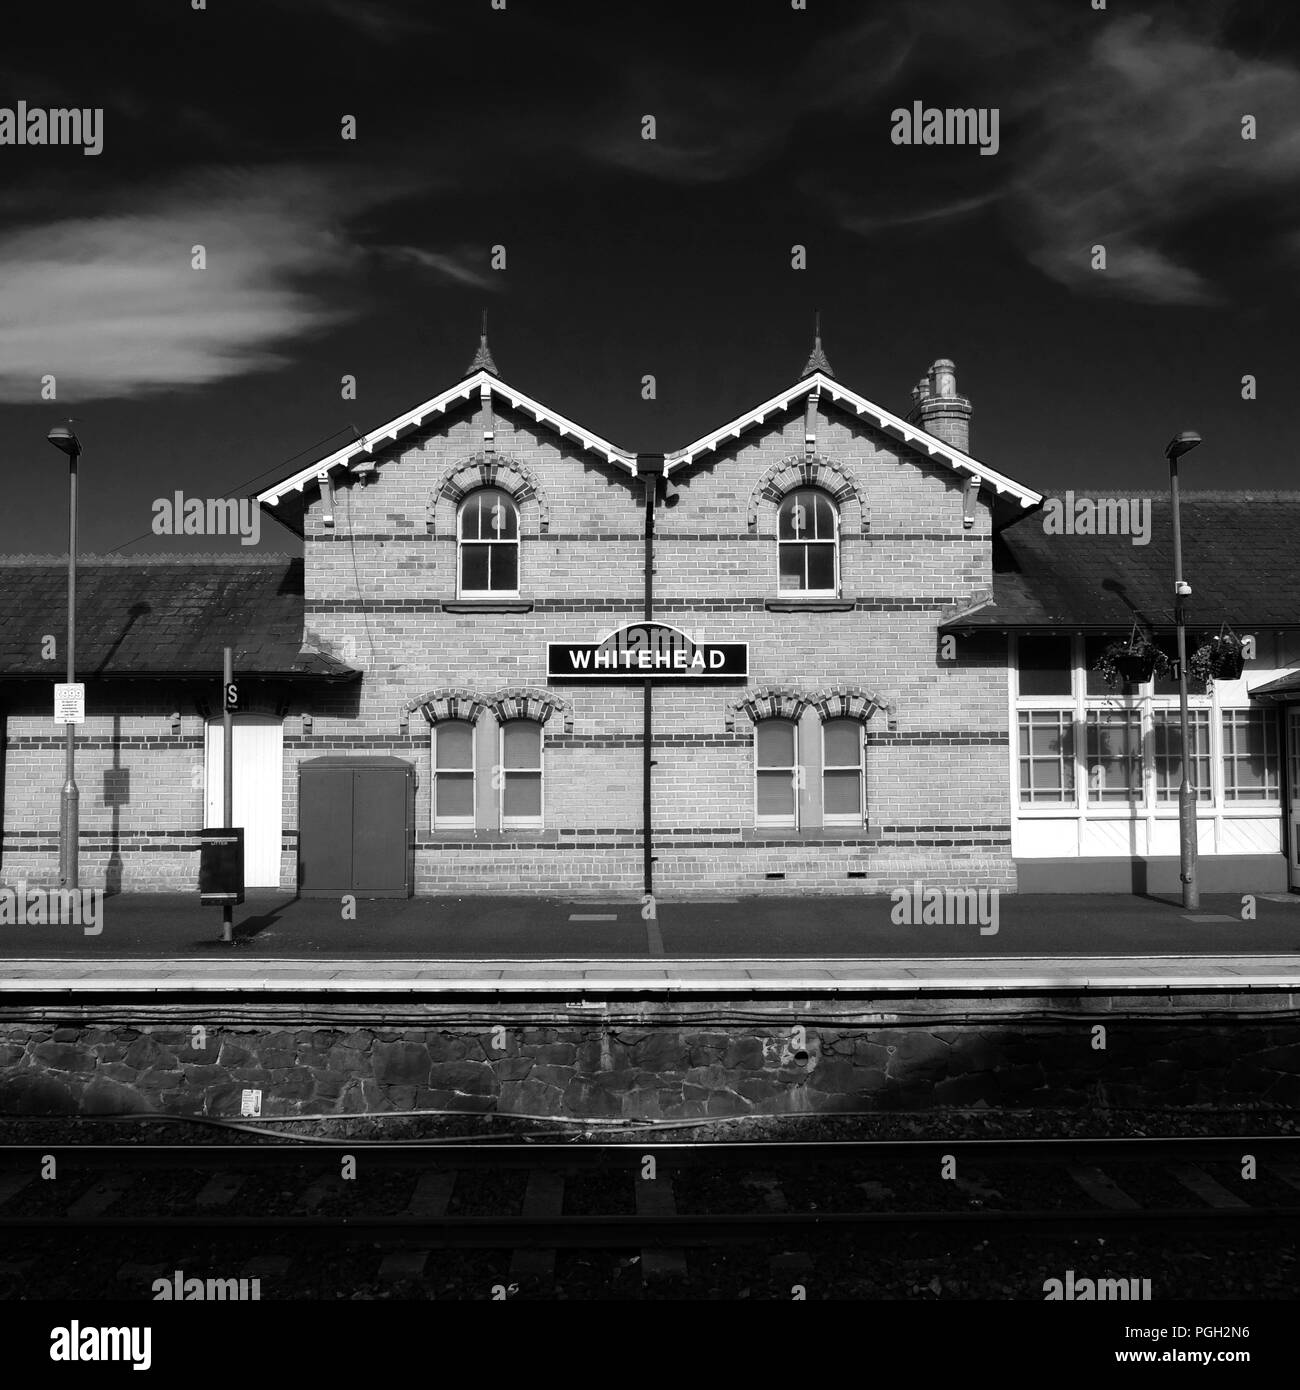 Railway station, Whitehead, County Antrim. Stock Photo